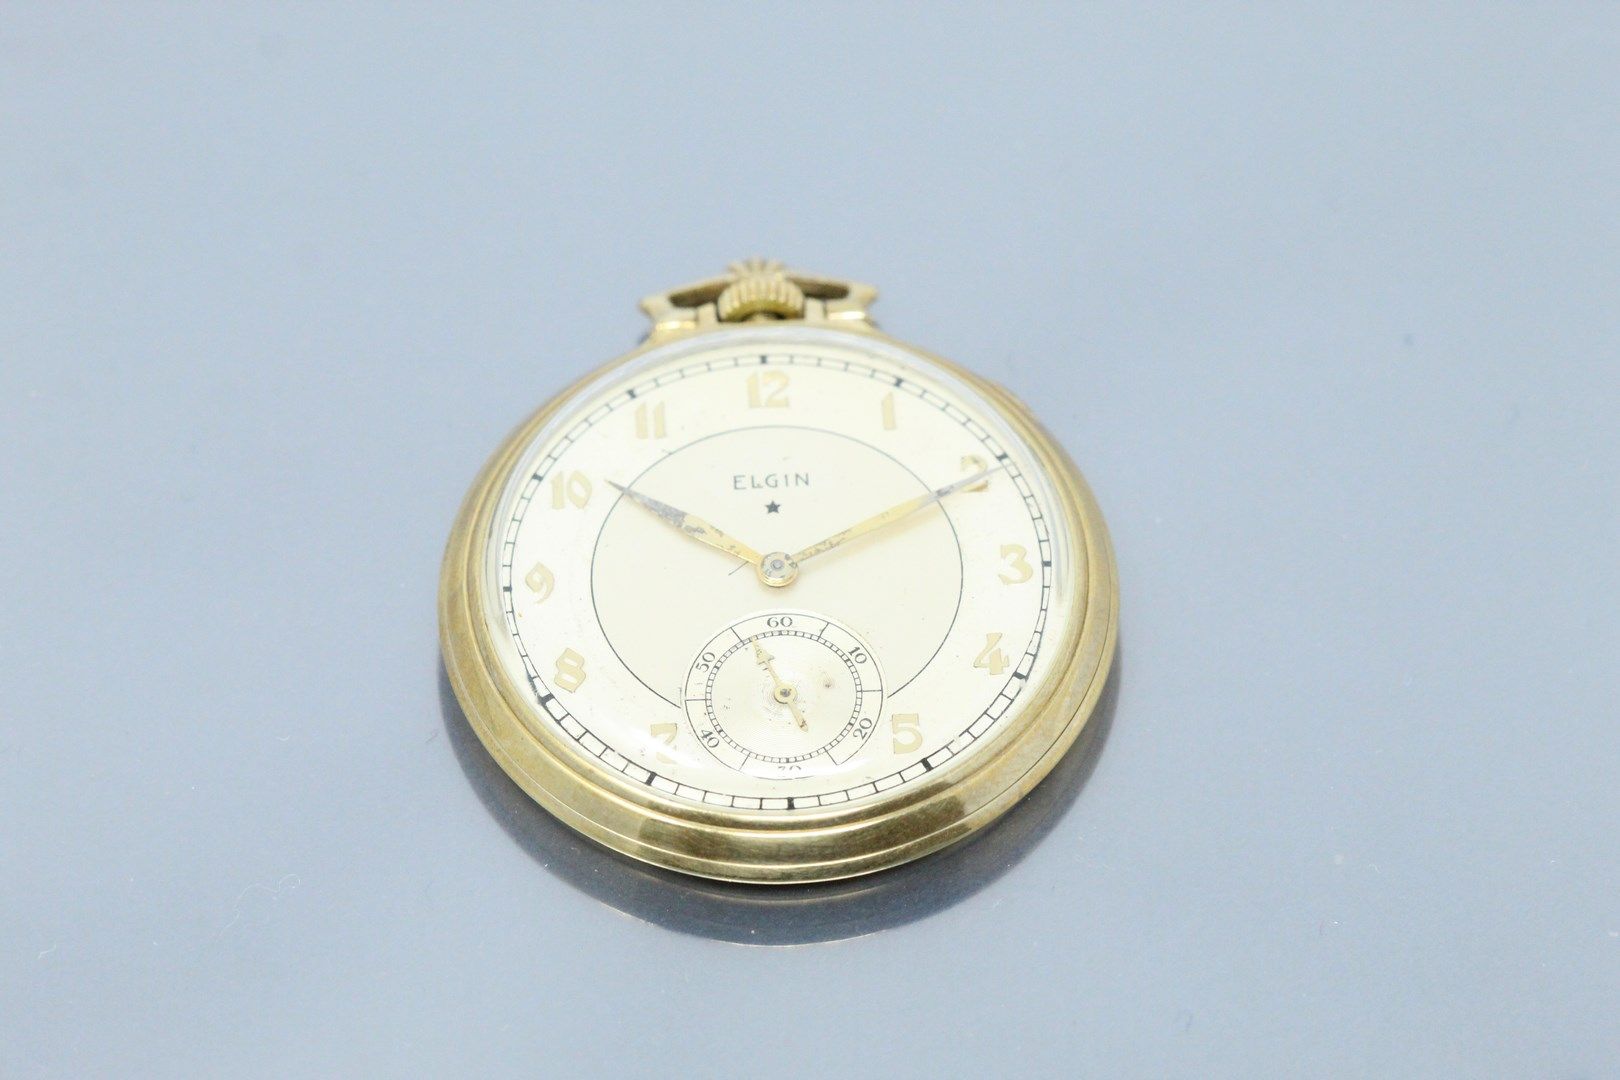 Null 辽宁省

鎏金金属怀表，表盘有鎏金背景，阿拉伯数字小时，铁路，六点钟方向有天文台表。

直径：50毫米